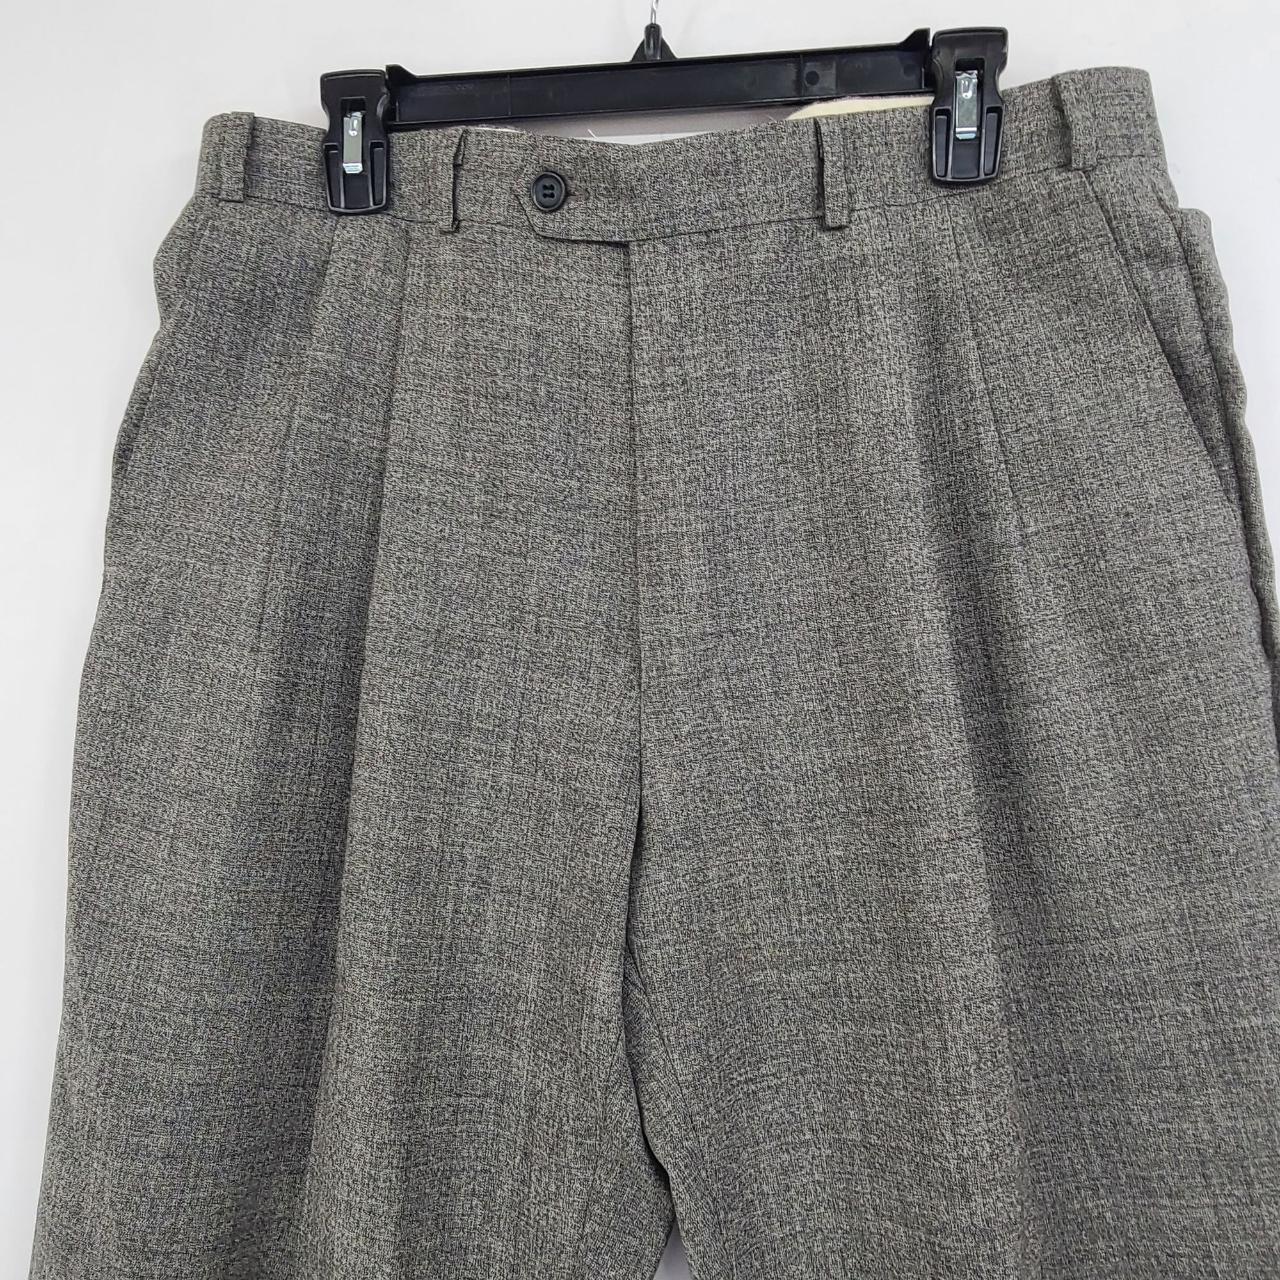 Brandini Men's Pleated Front Wool Dress Pants Gray... - Depop